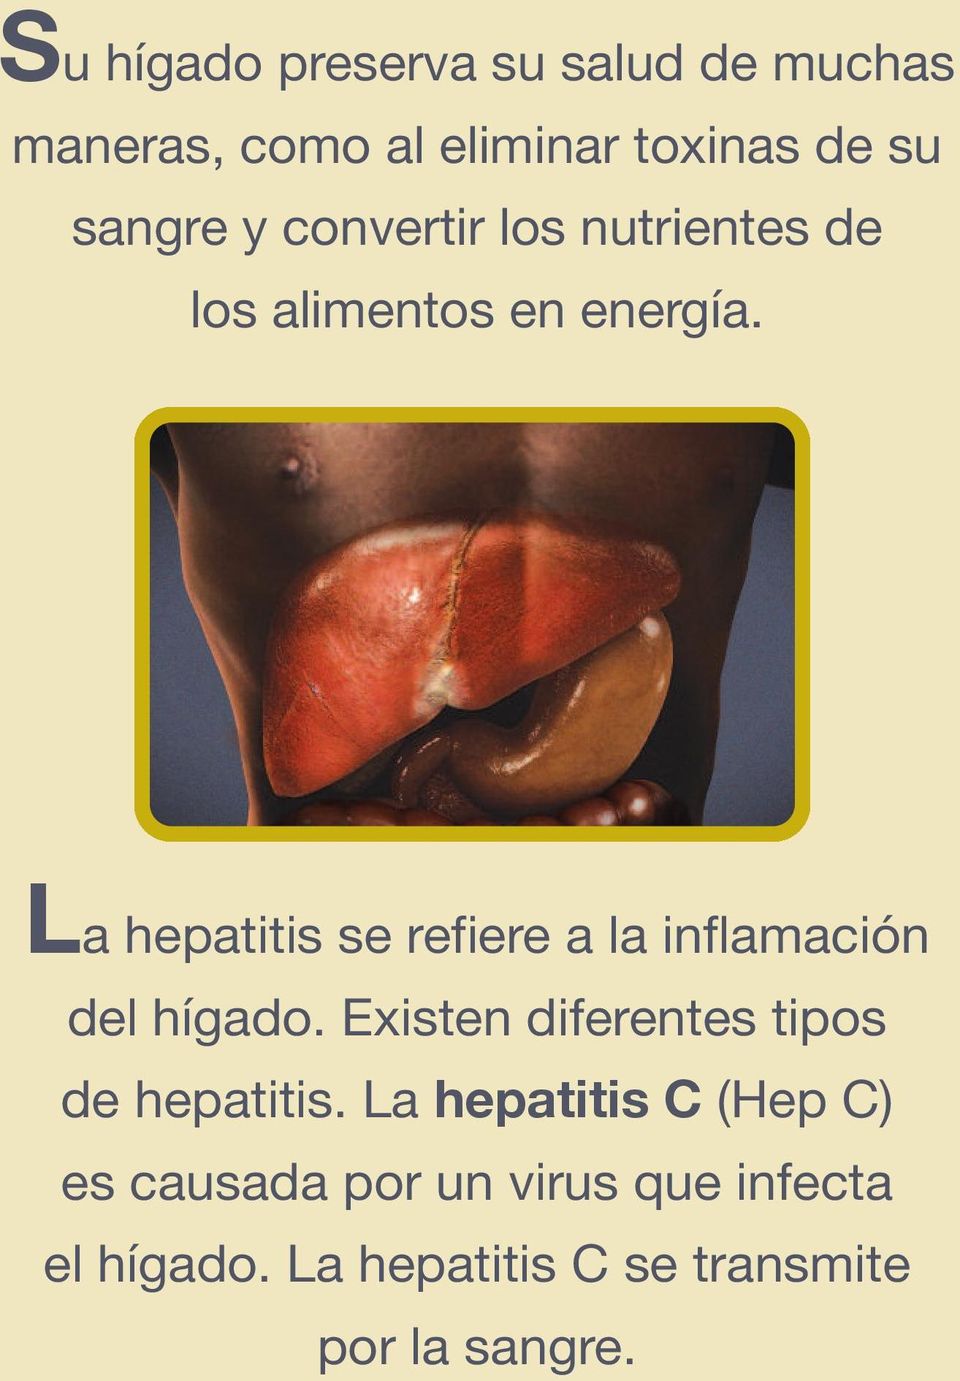 La hepatitis se refiere a la inflamación del hígado.